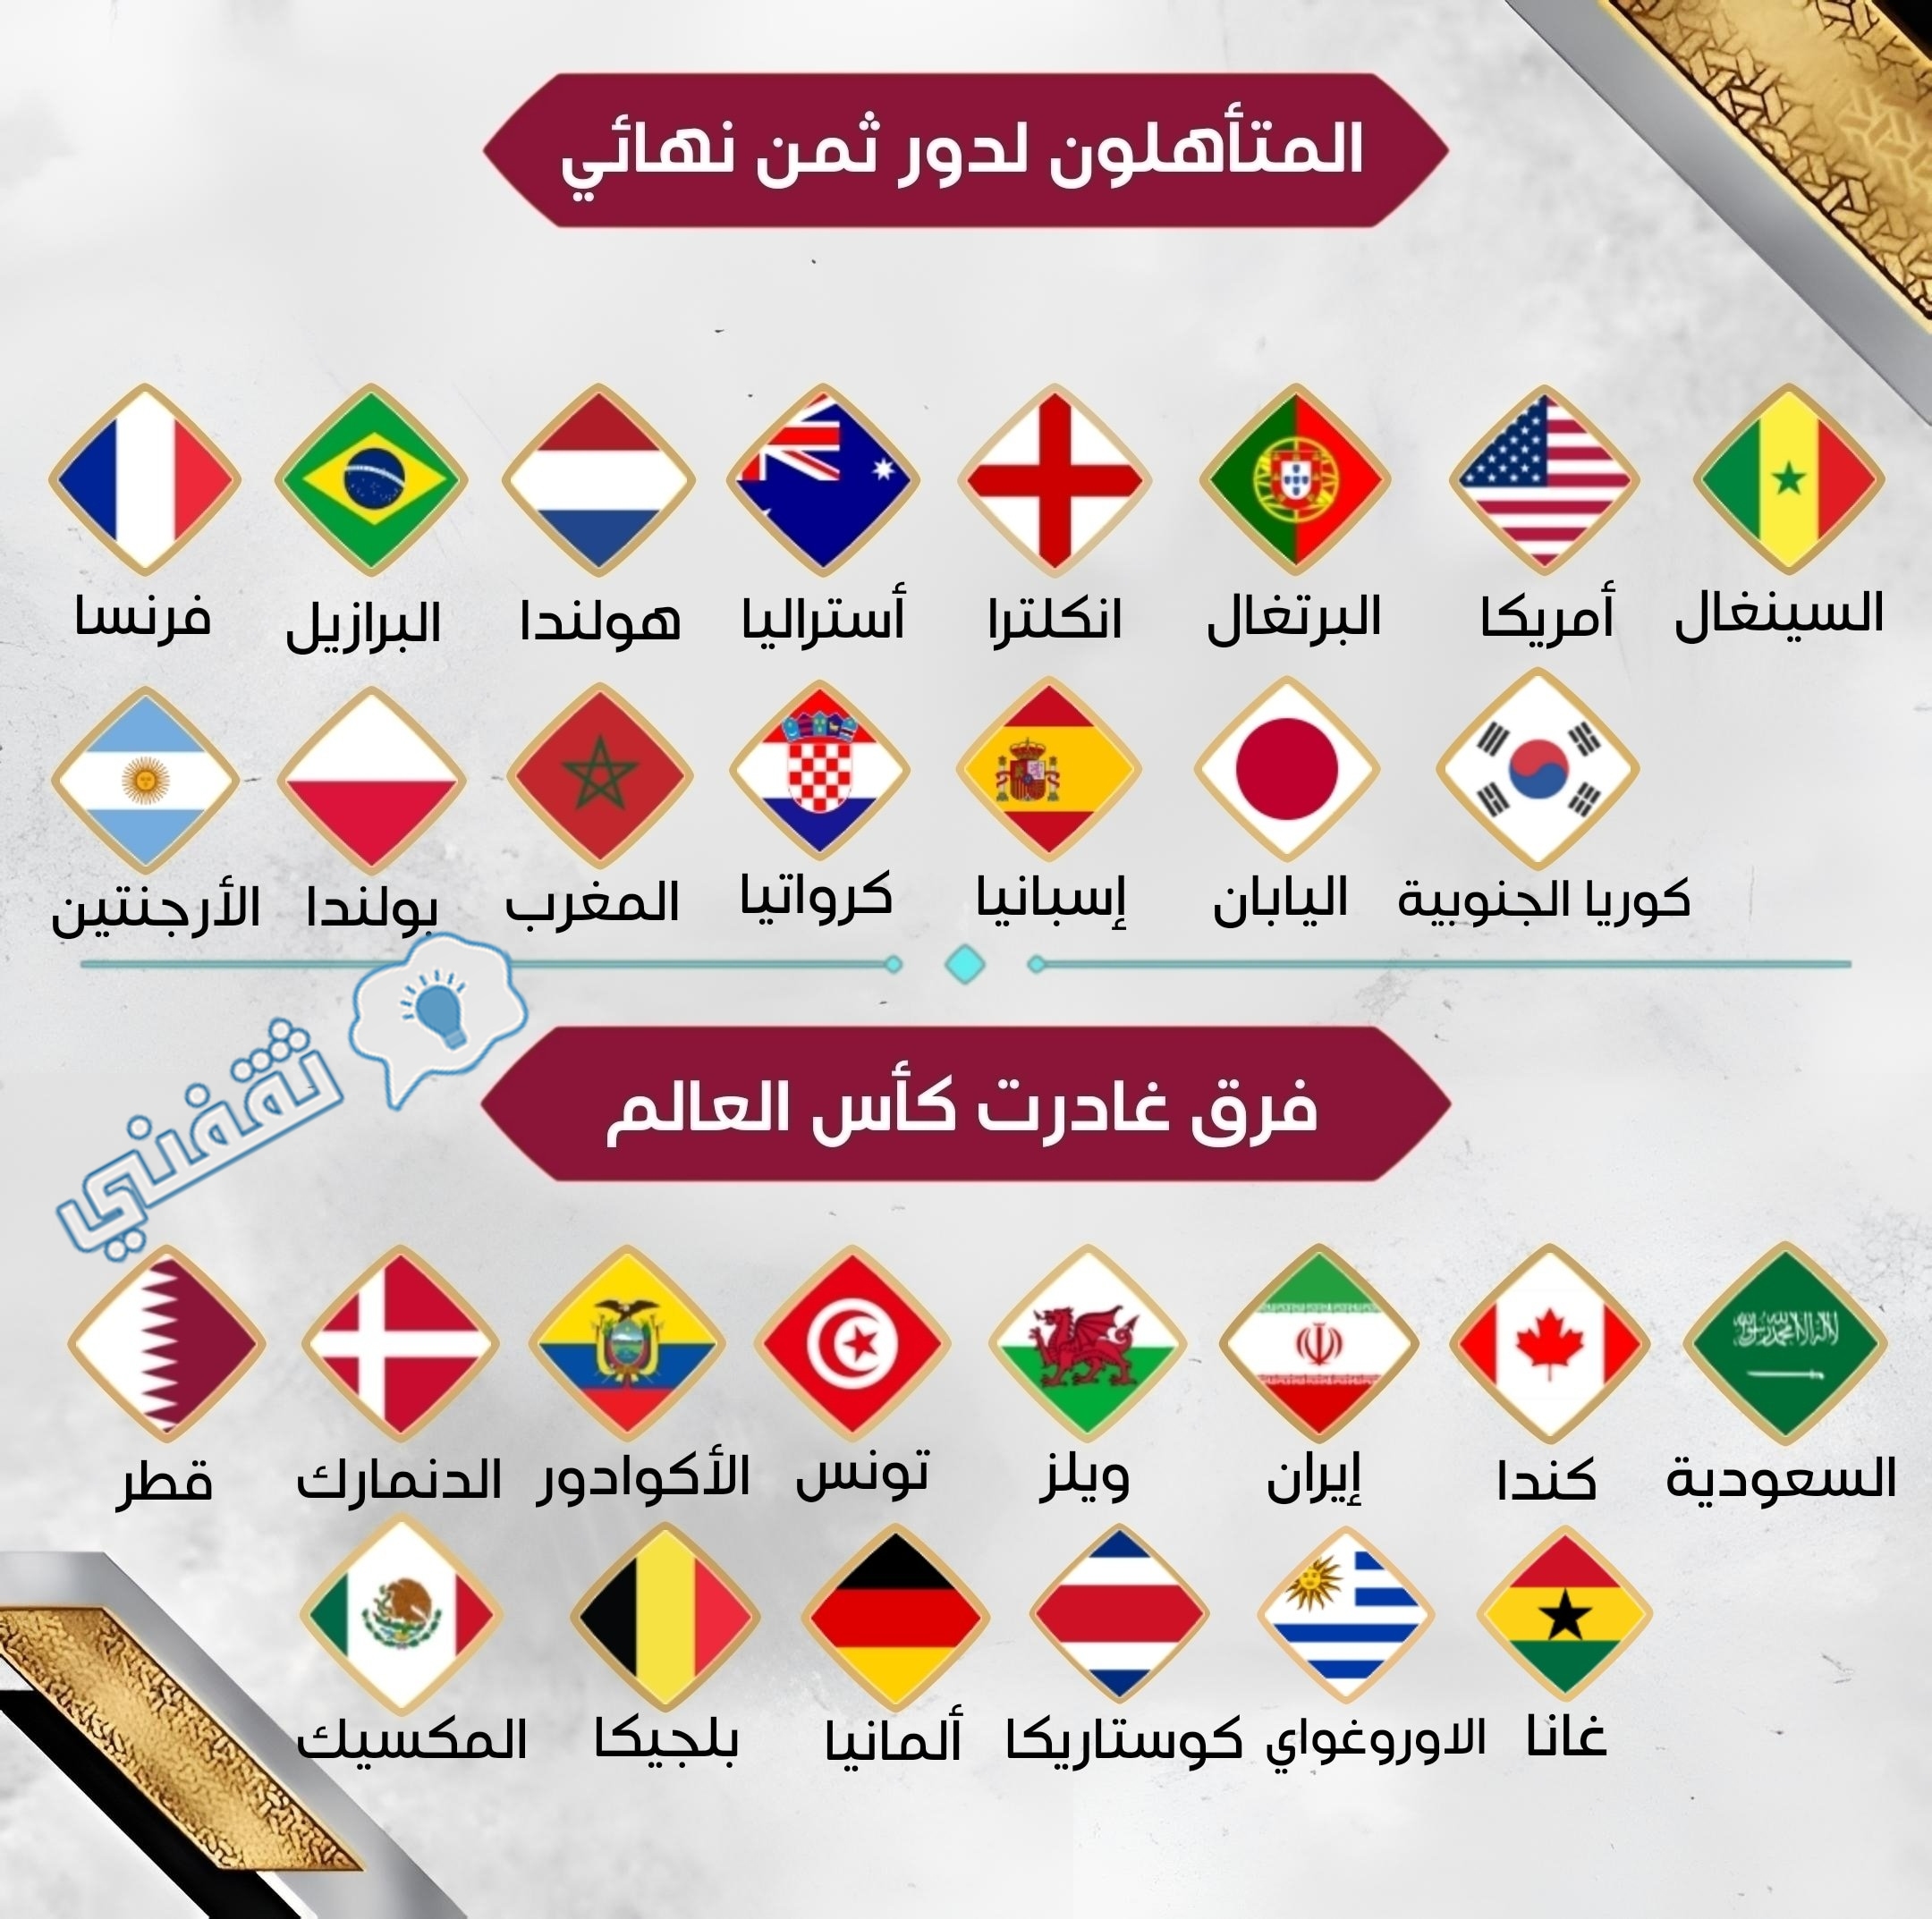 المنتخبات المتأهلة إلى دور الـ16 في كأس العالم 2022 والأخرى المغادرة من دور المجموعات